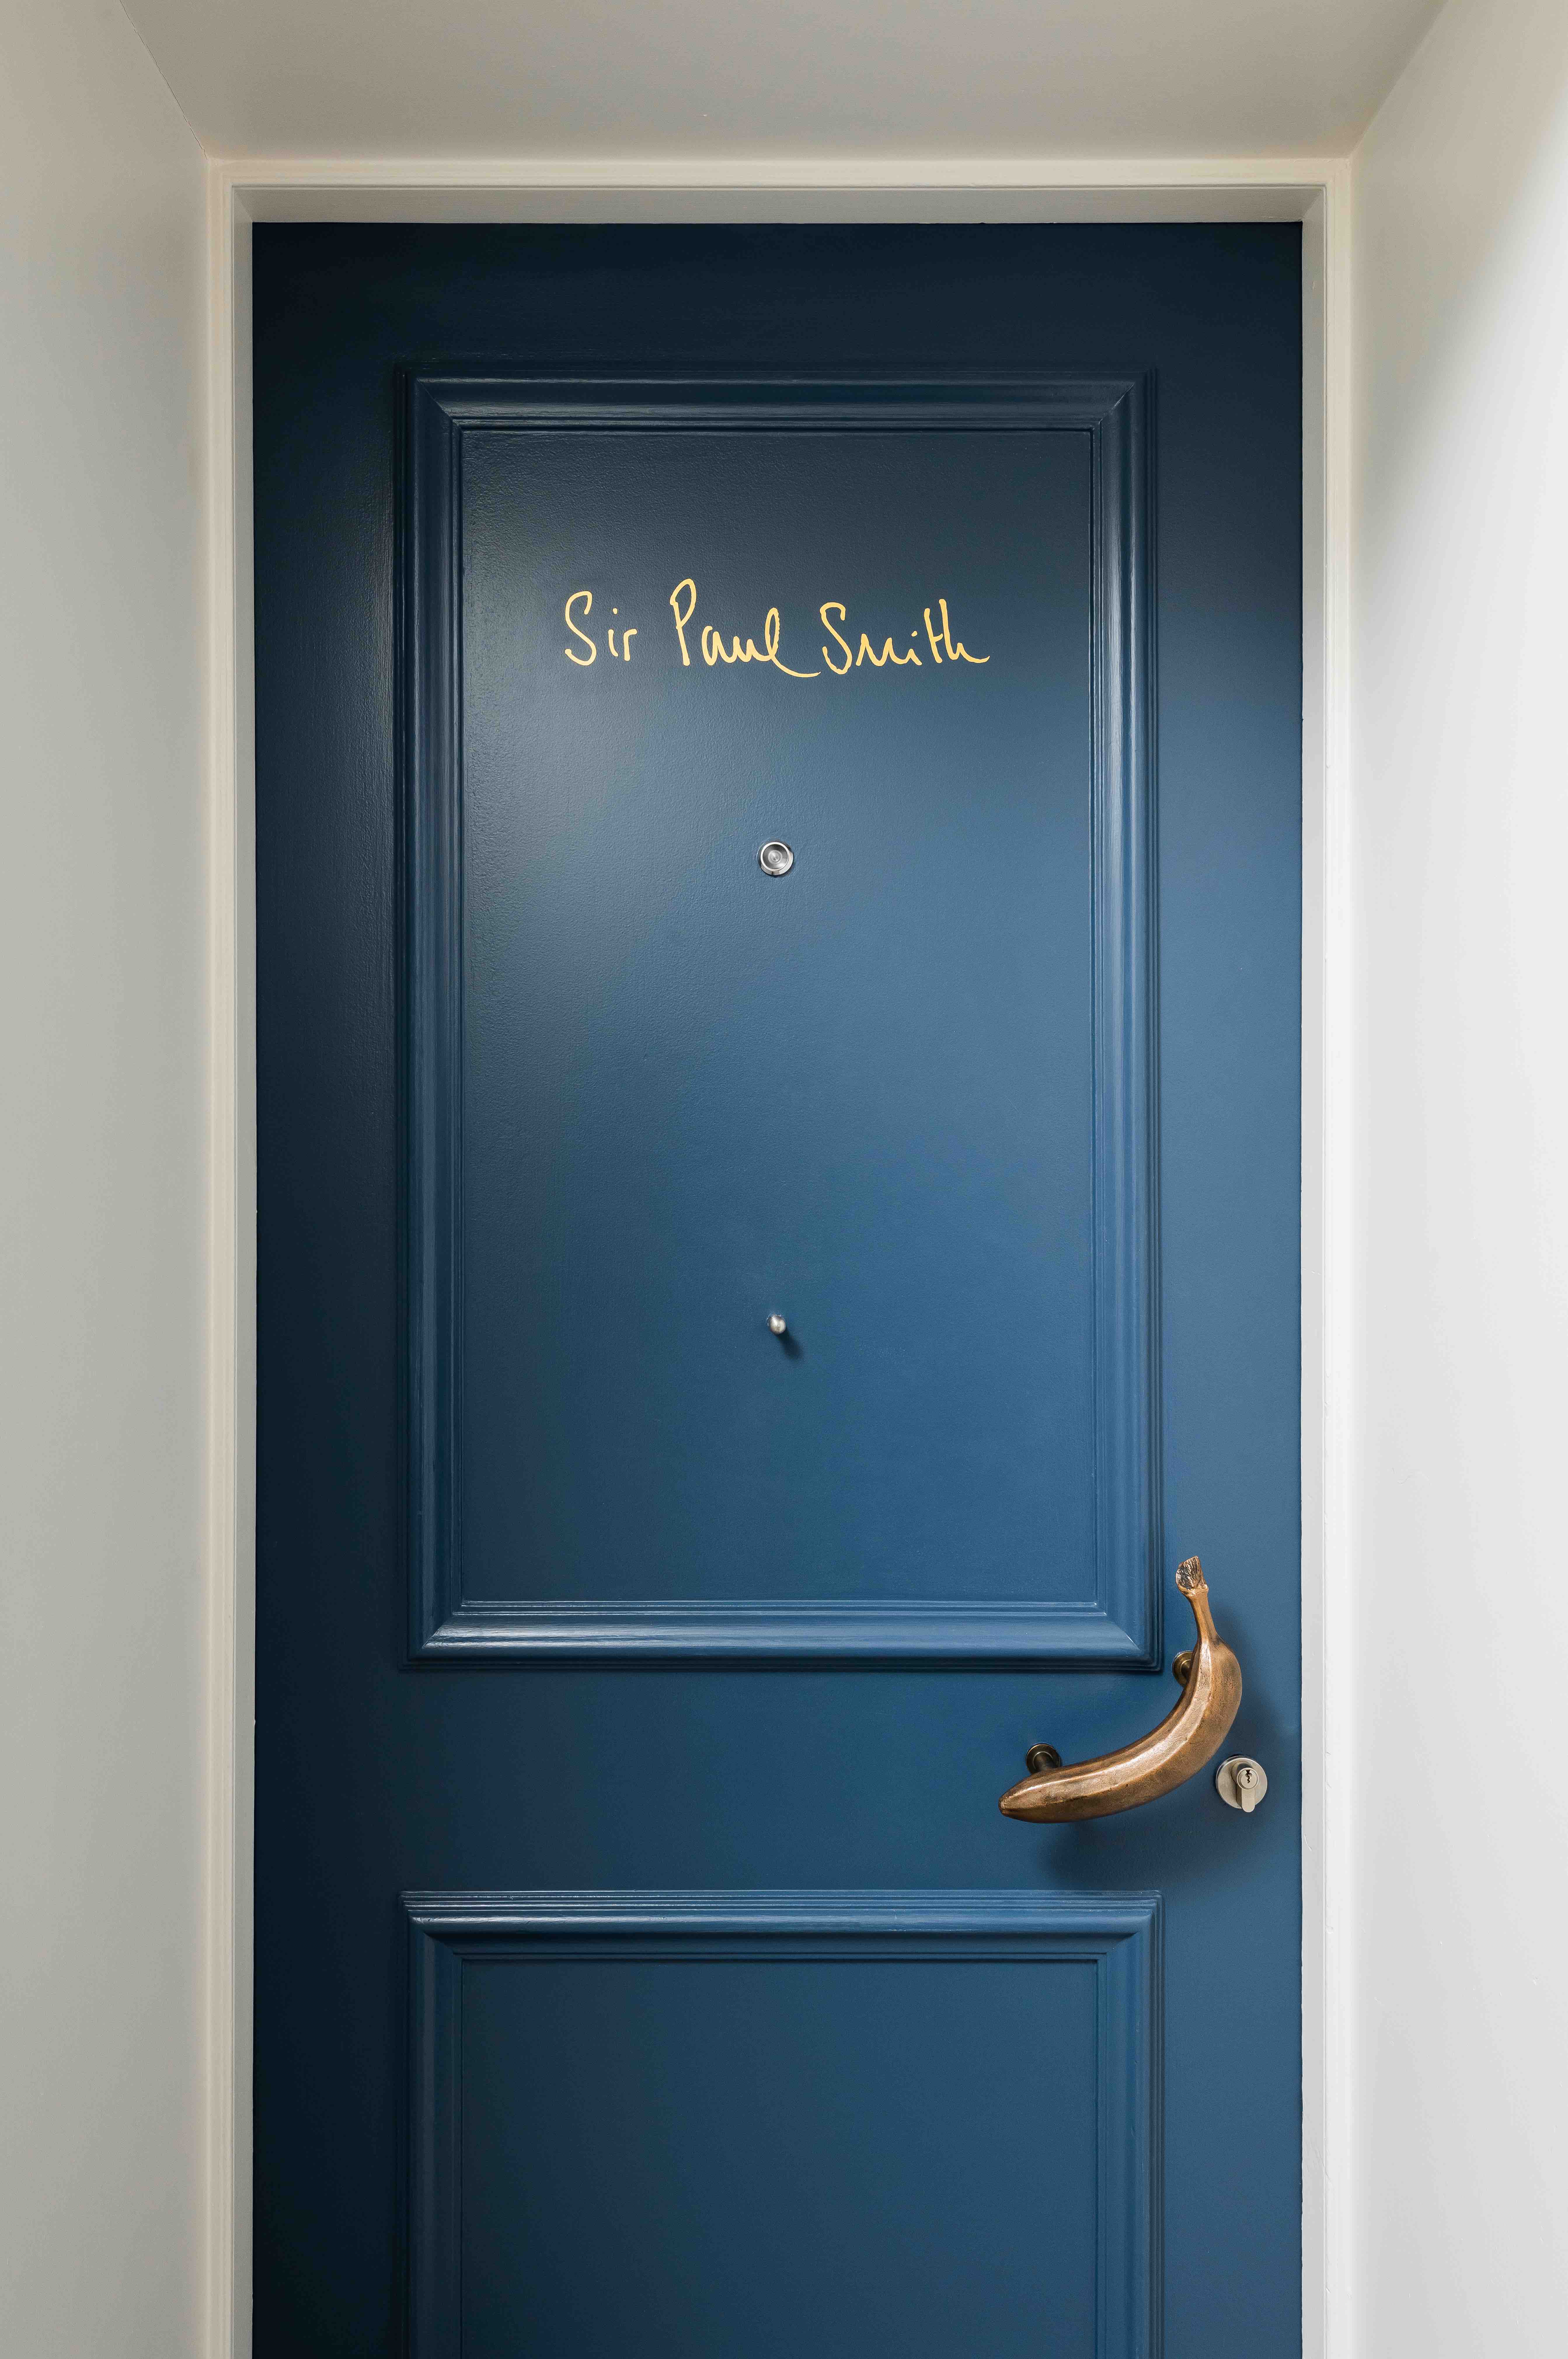 Paul Smith diseña su primera suite de hotel en Londres